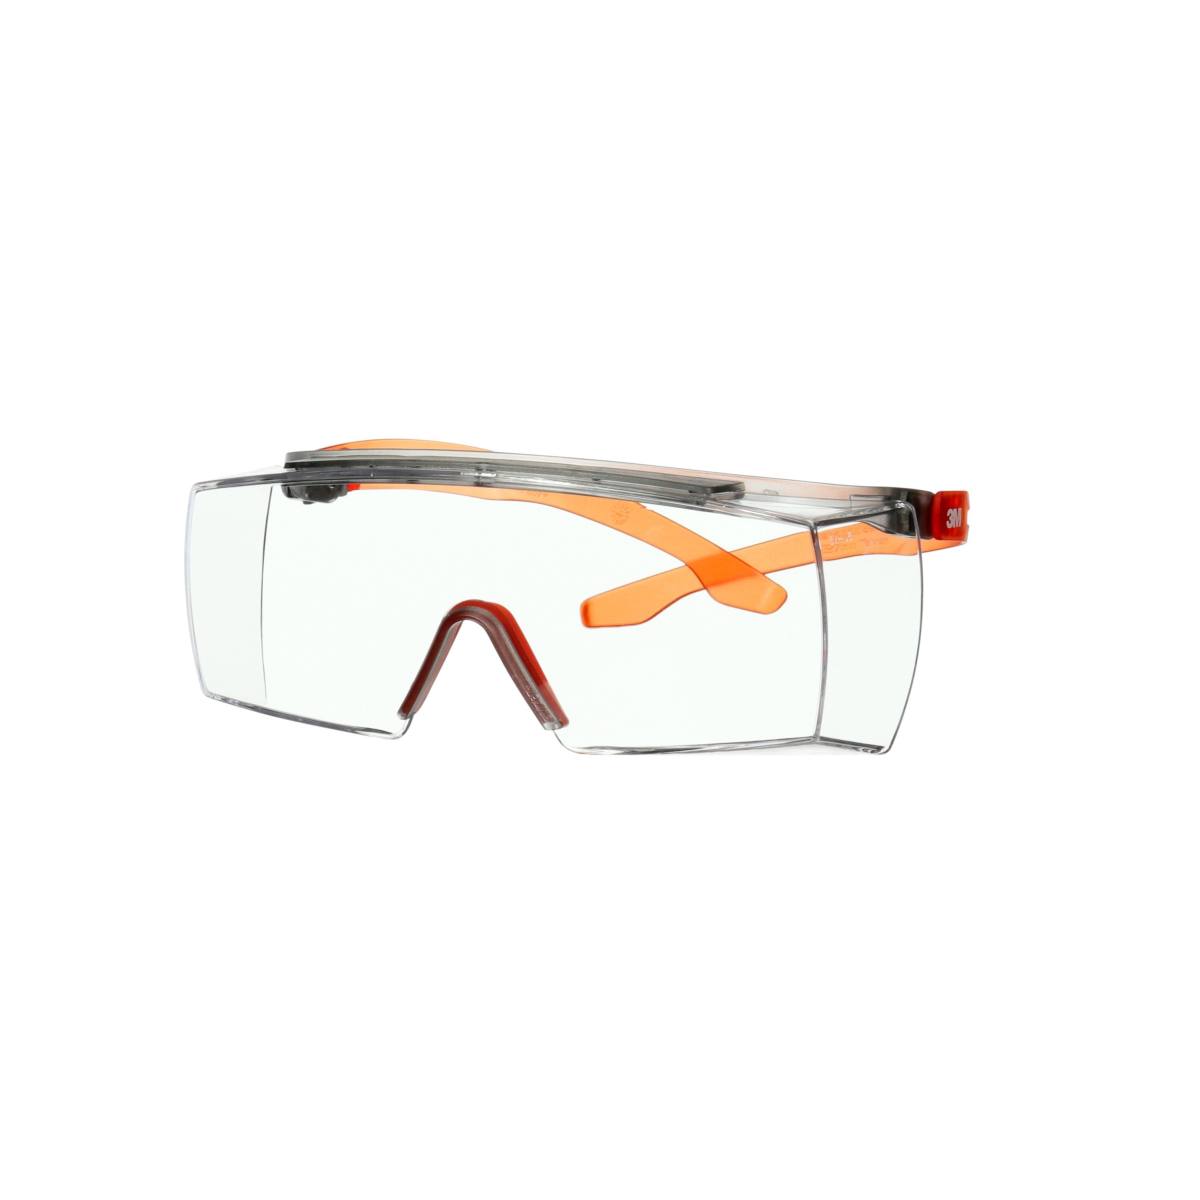 3M SecureFit 3700 Überbrille, orangefarbene Bügel, Scotchgard Anti-Beschlag Beschichtung (K&N), transparente Scheibe, winkelverstellbar, SF3701SGAF-ORG-EU